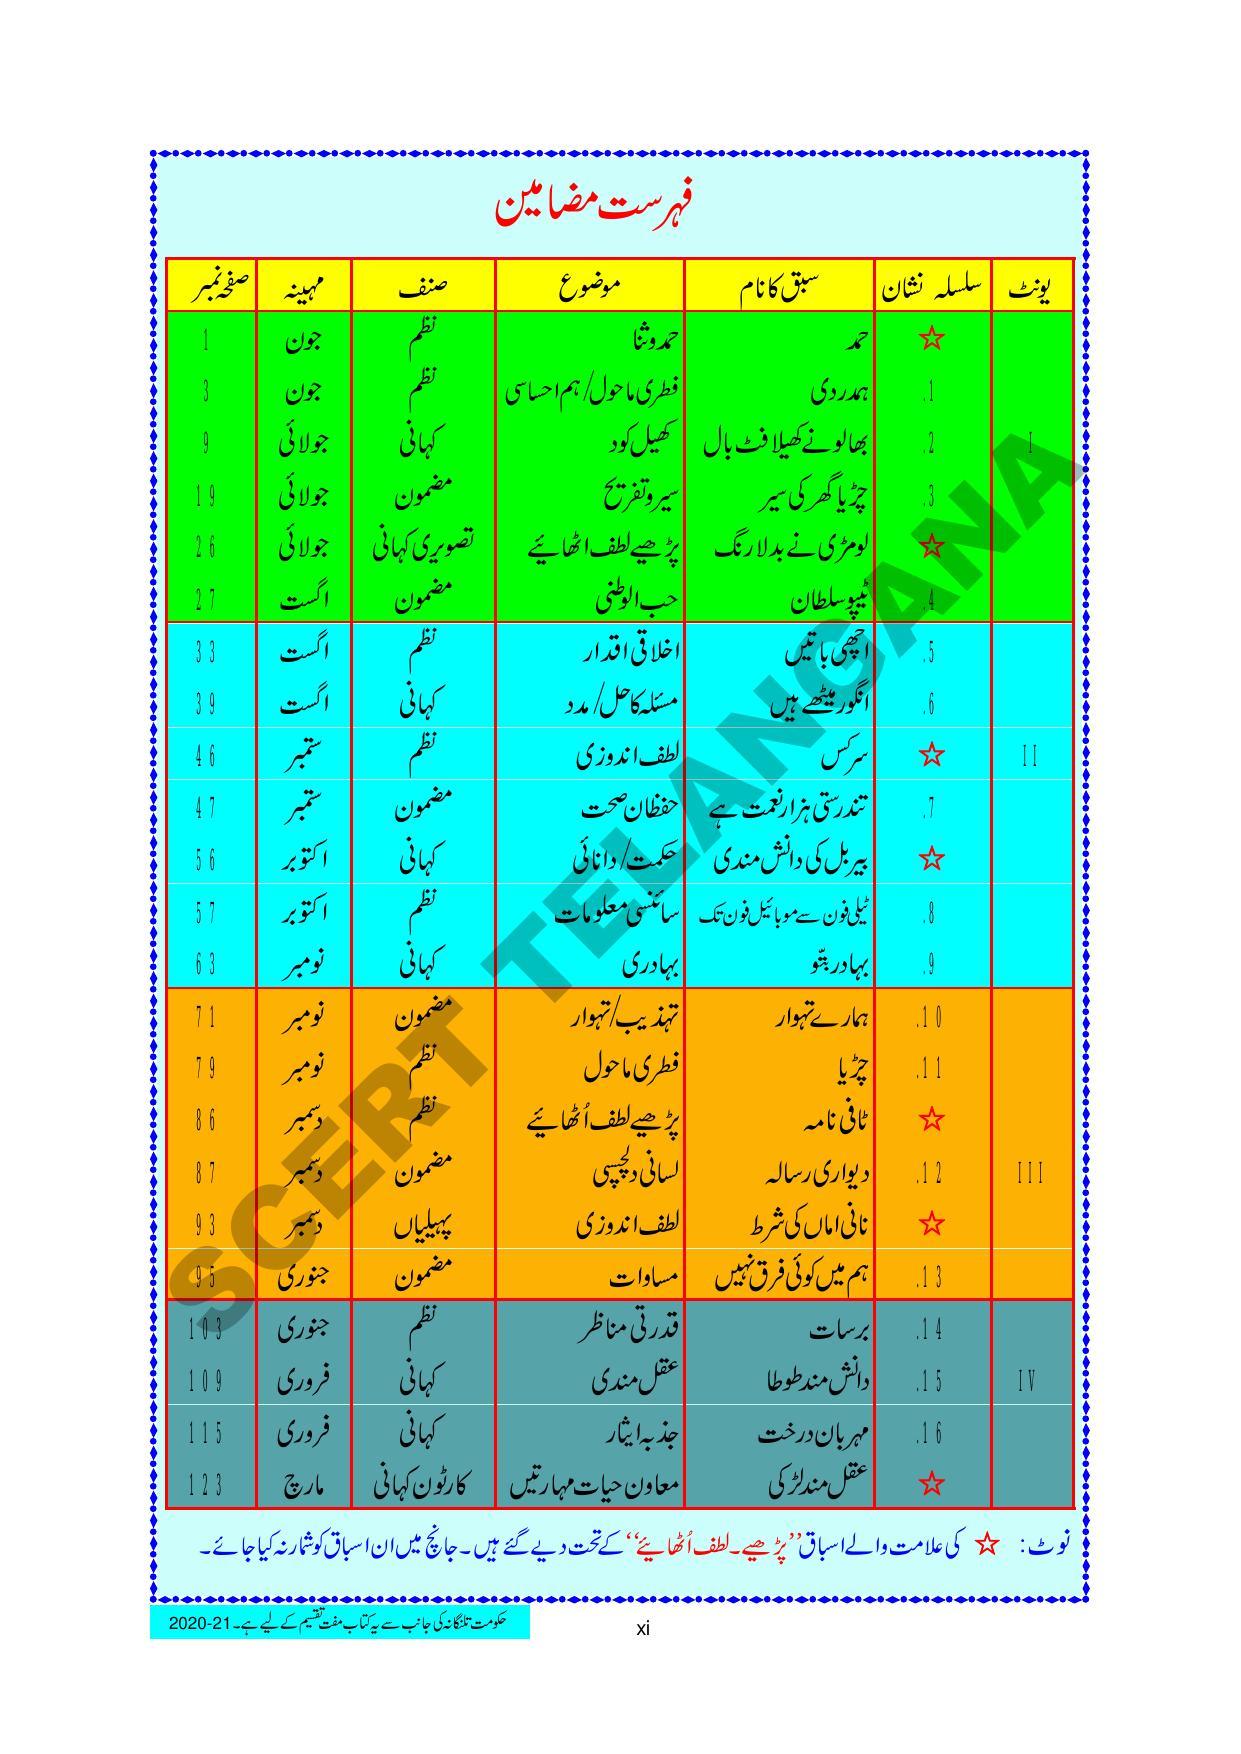 TS SCERT Class 3 First Language(Urdu Medium) Text Book - Page 13